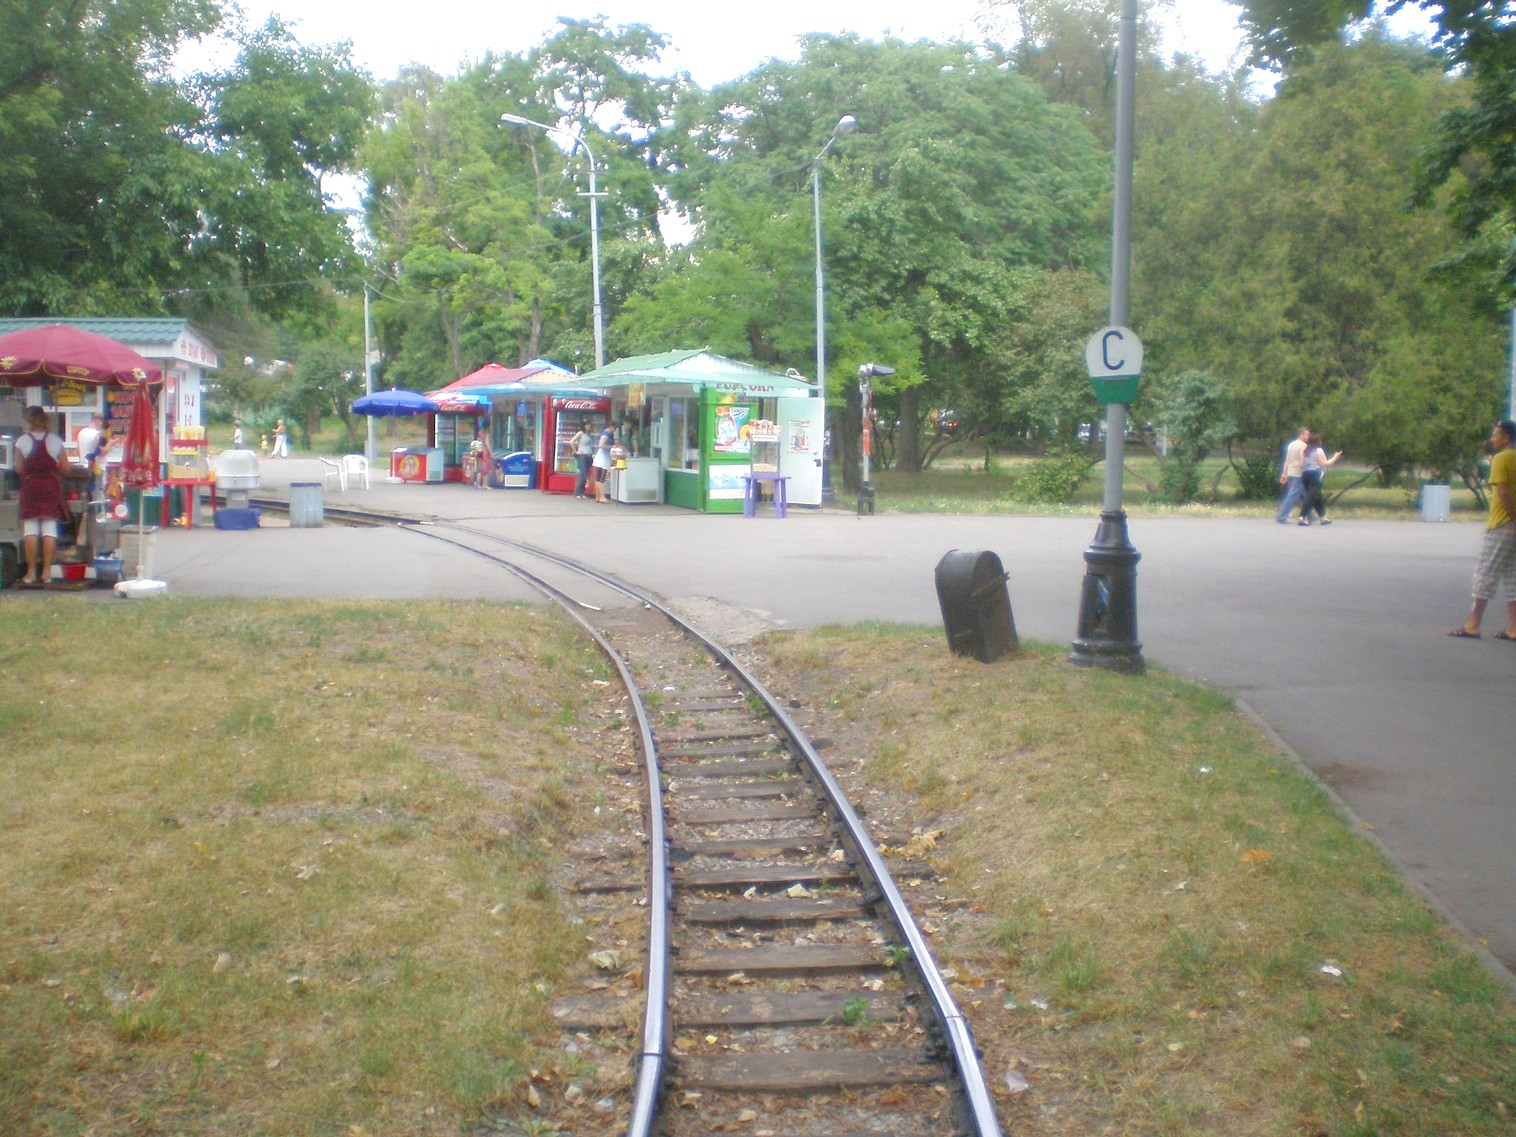 Малая Приднепровская (Днепропетровская) детская железная дорога  —  фотографии, сделанные в 2009 году (часть 3)